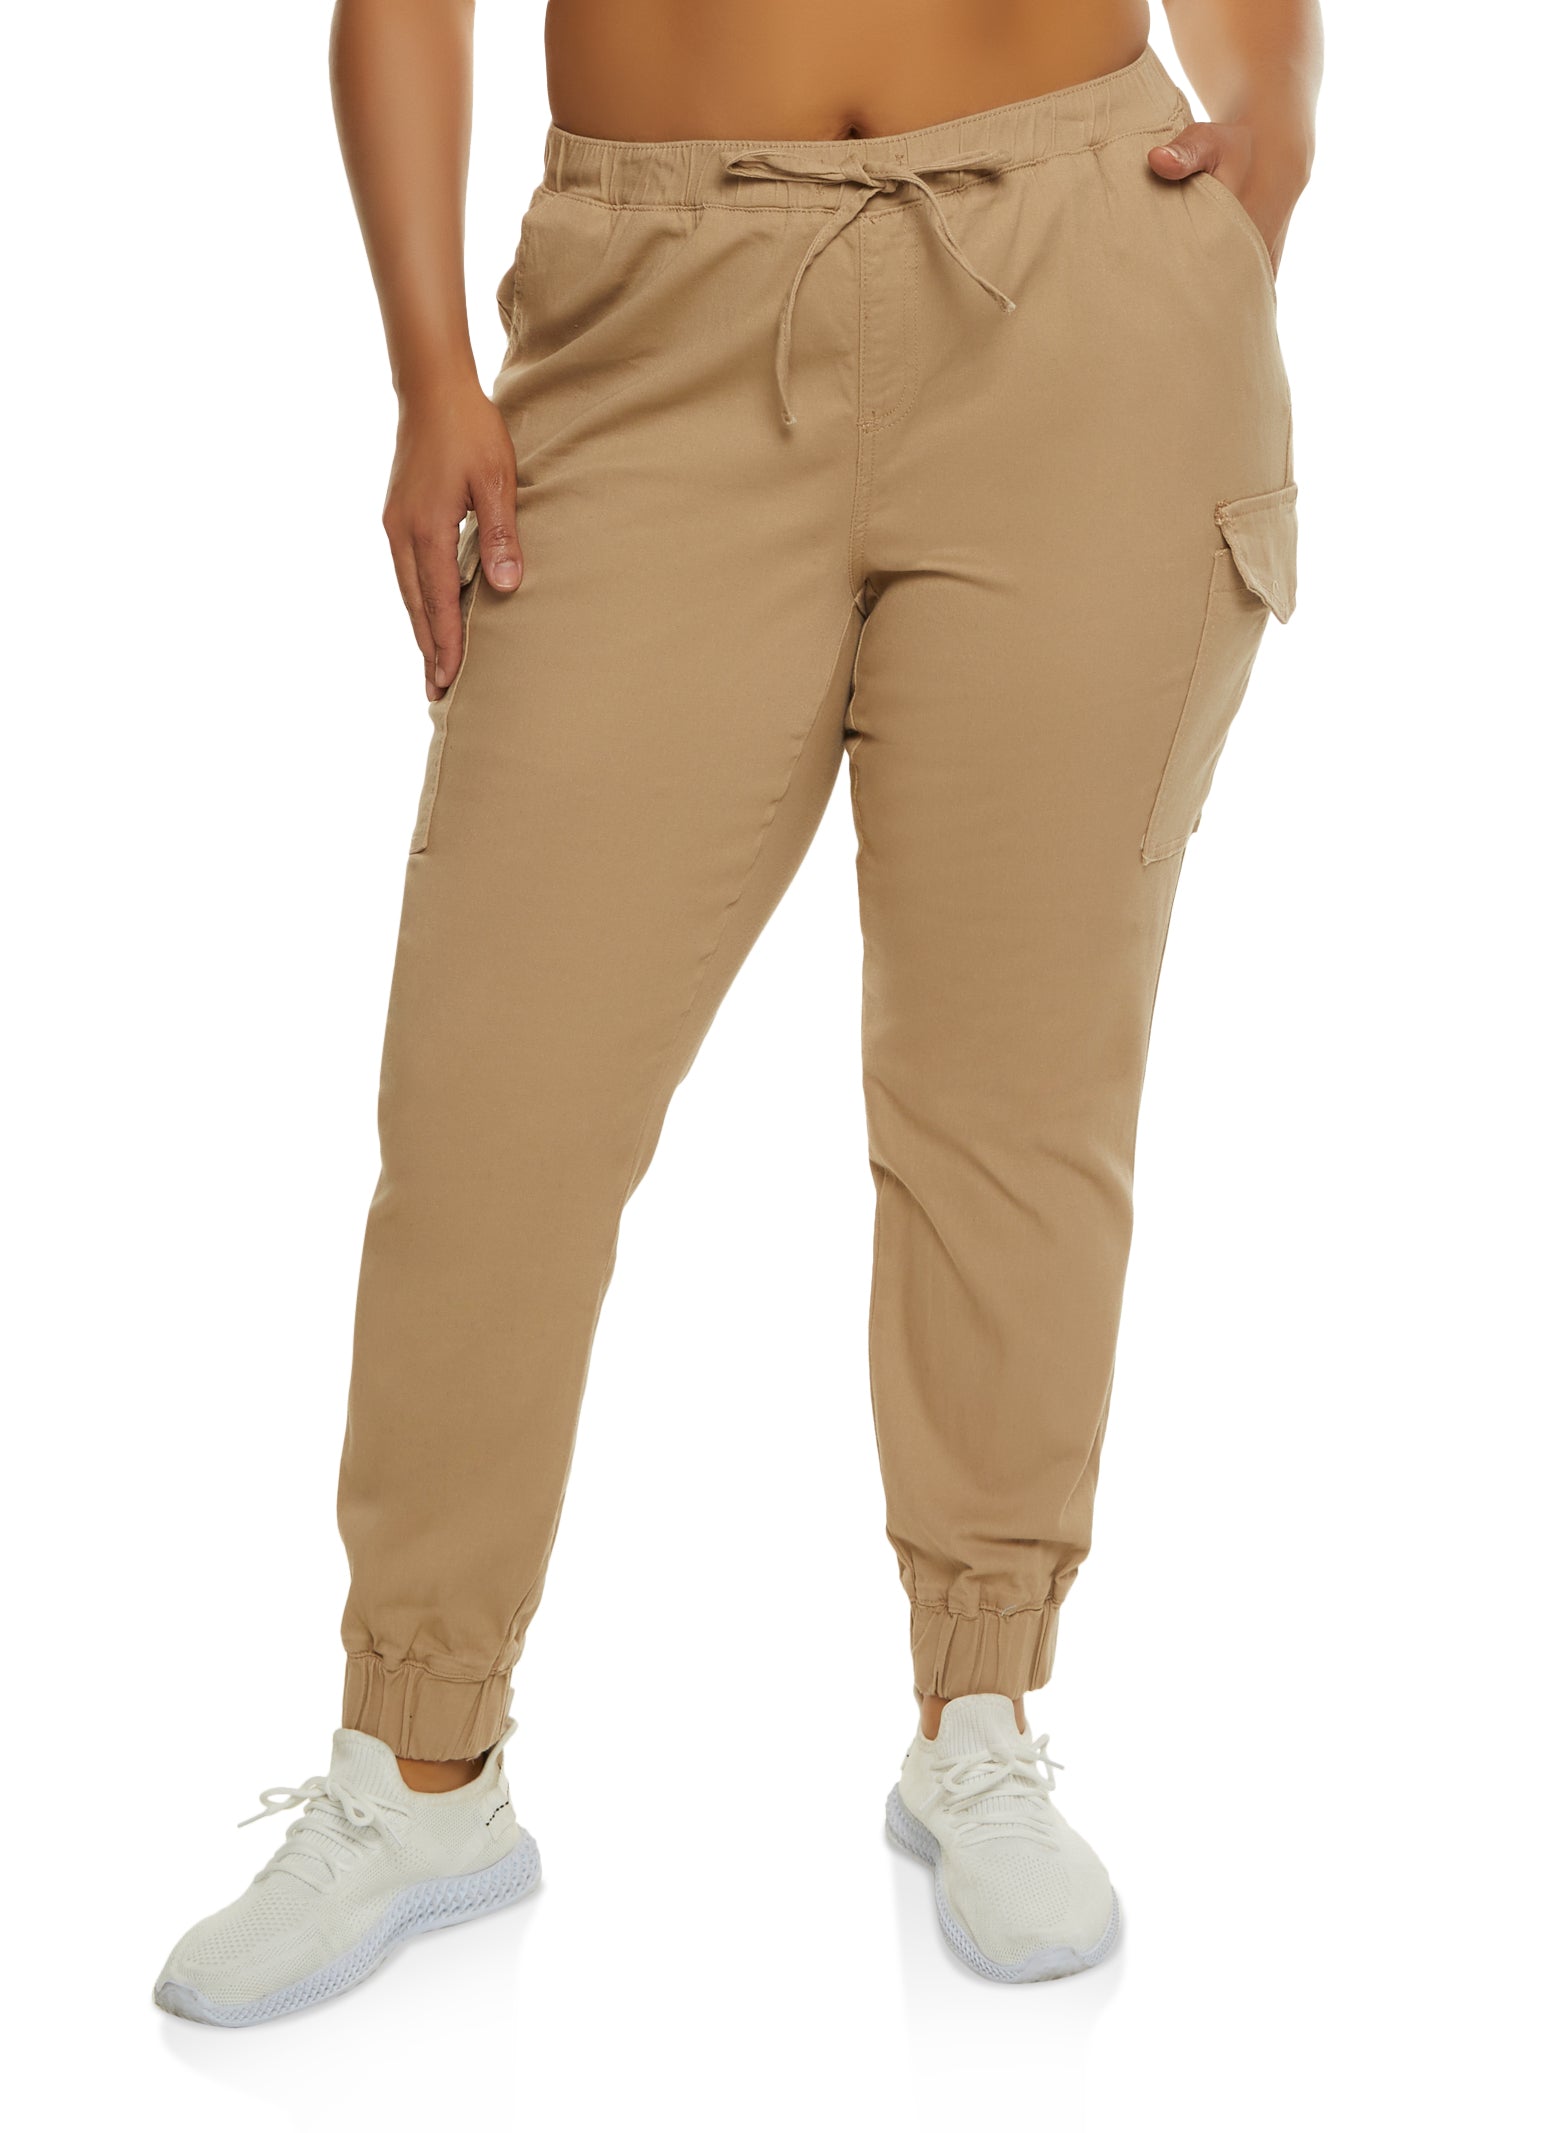 Plus Size Tek Gear® Woven Golf Joggers  Bottom clothes, Plus size, Plus  size women